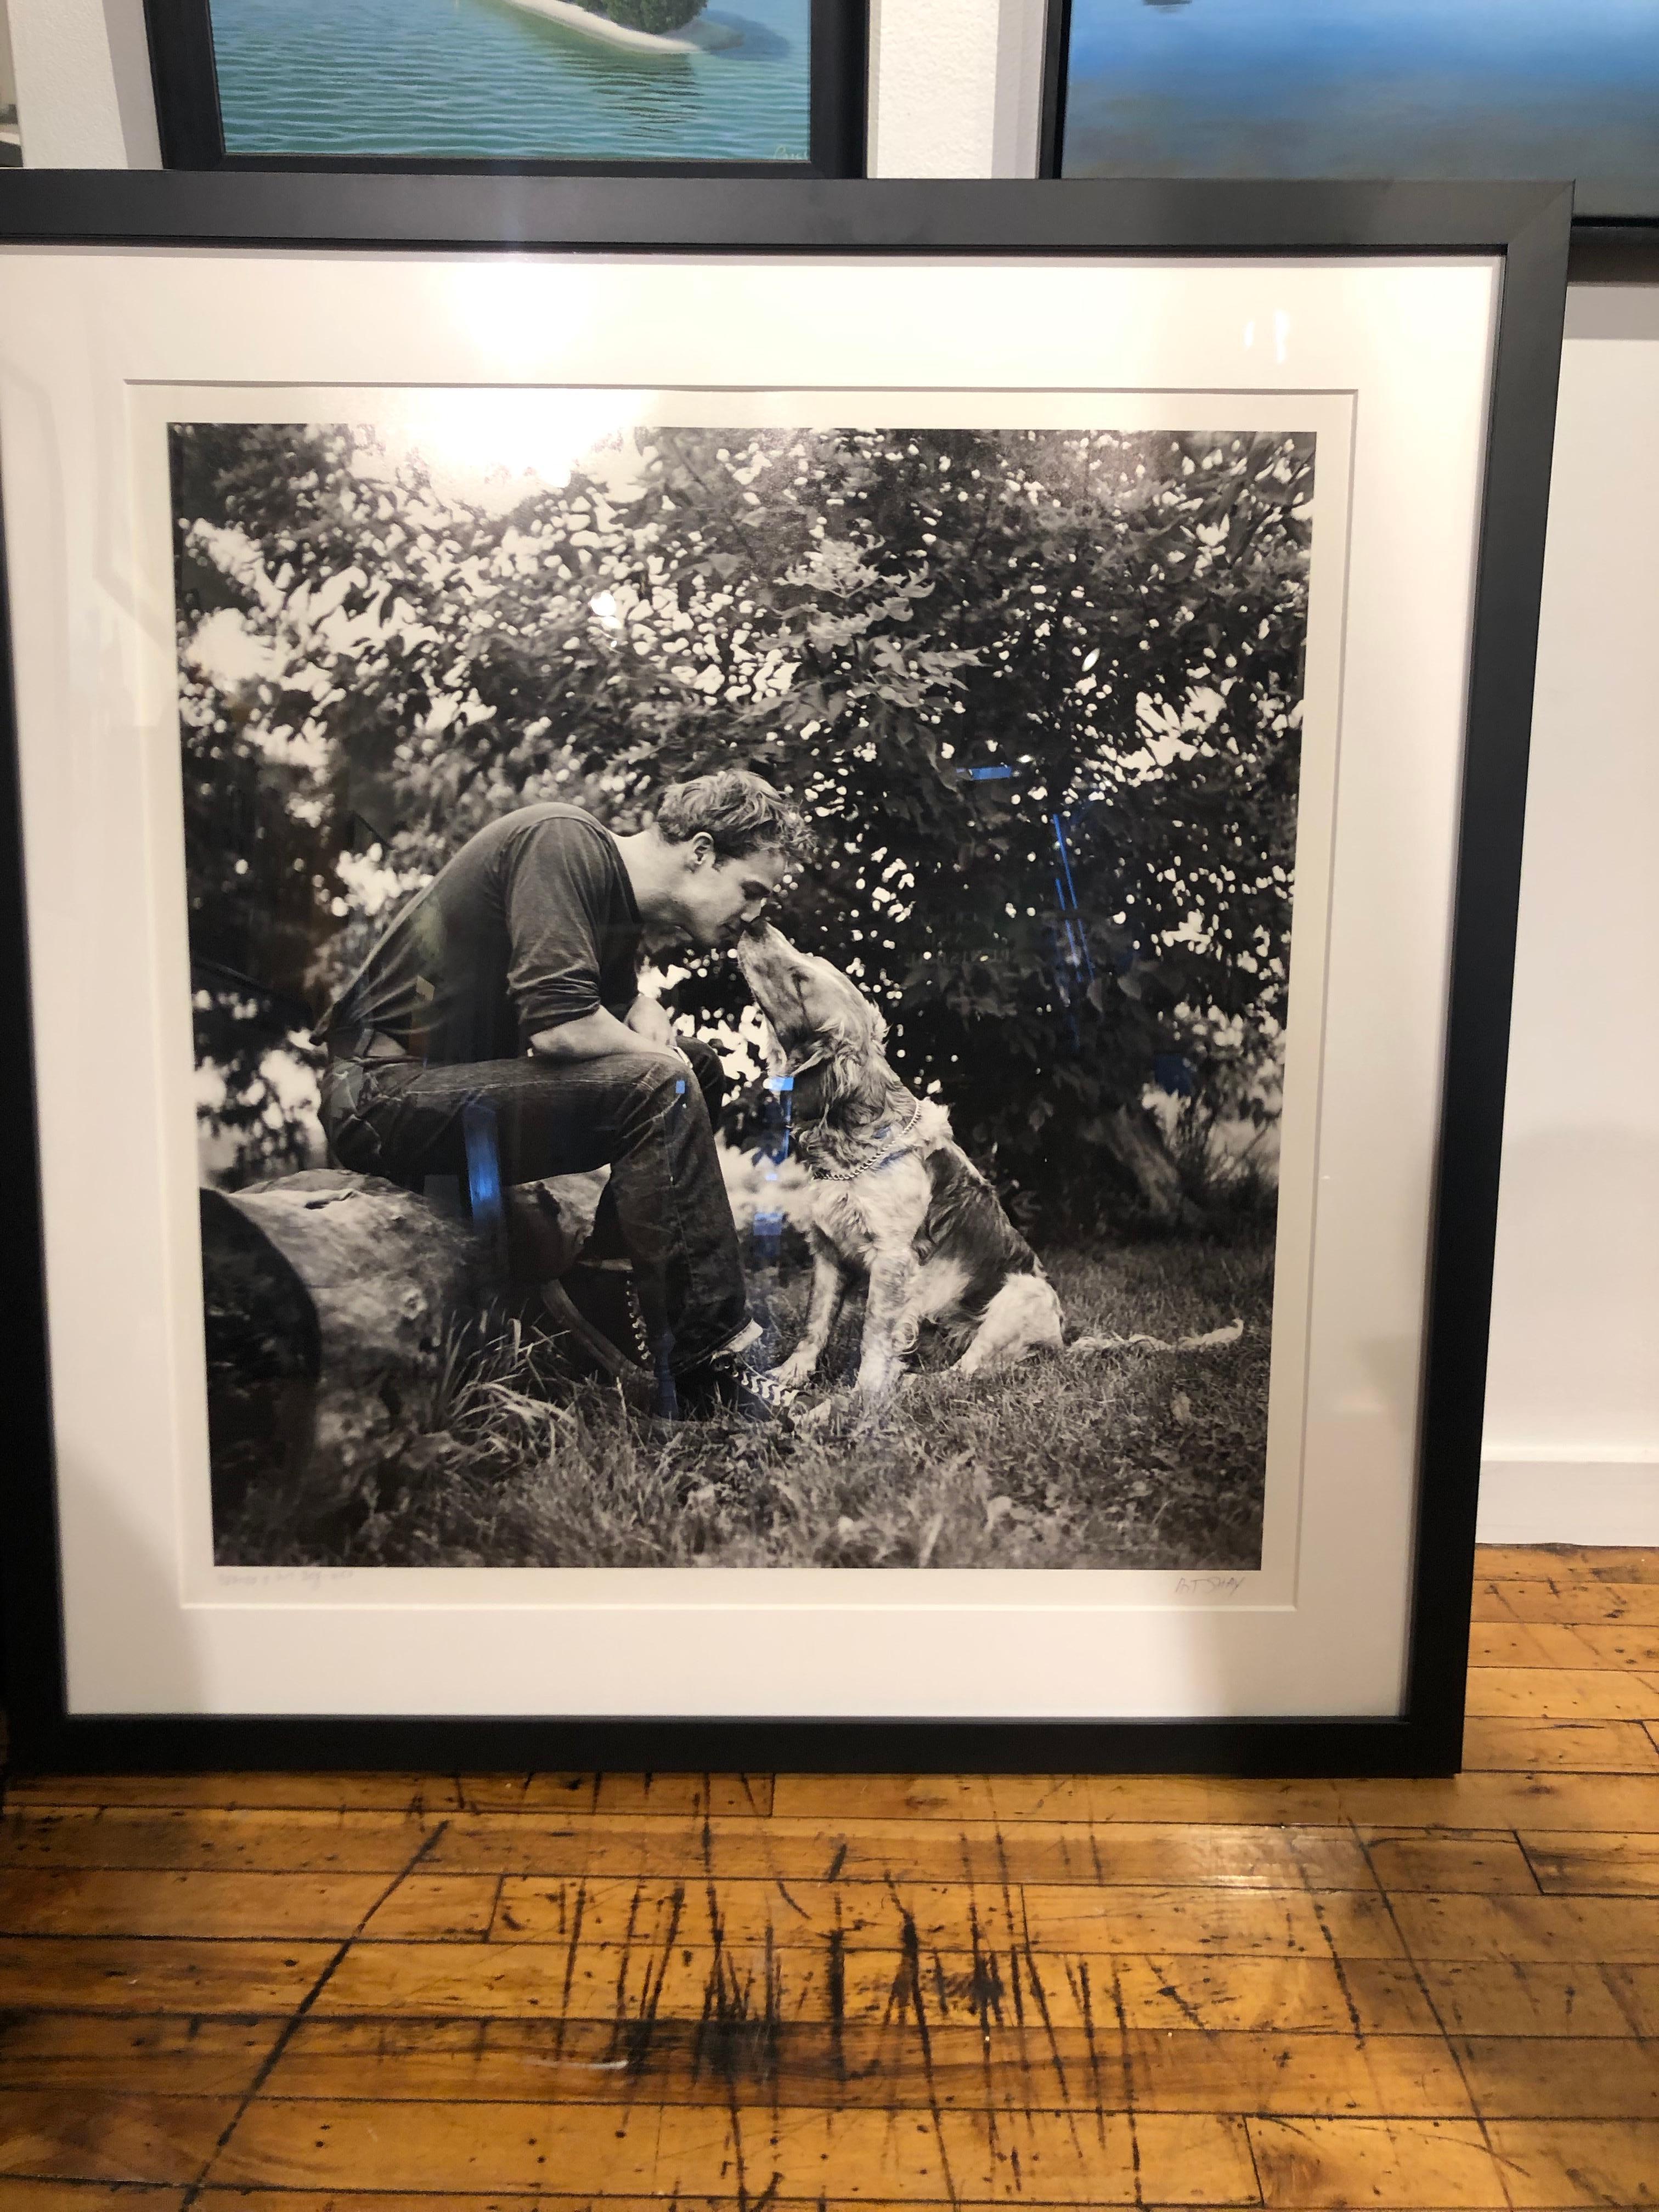 Il s'agit d'une photo en noir et blanc à grande échelle de Marlon Brando, jeune homme, dans la ferme familiale avec son chien.  En 1951, Life Magazine a demandé à Art Shay de photographier Marlon Brando dans sa maison familiale à Libertyville, IL. 